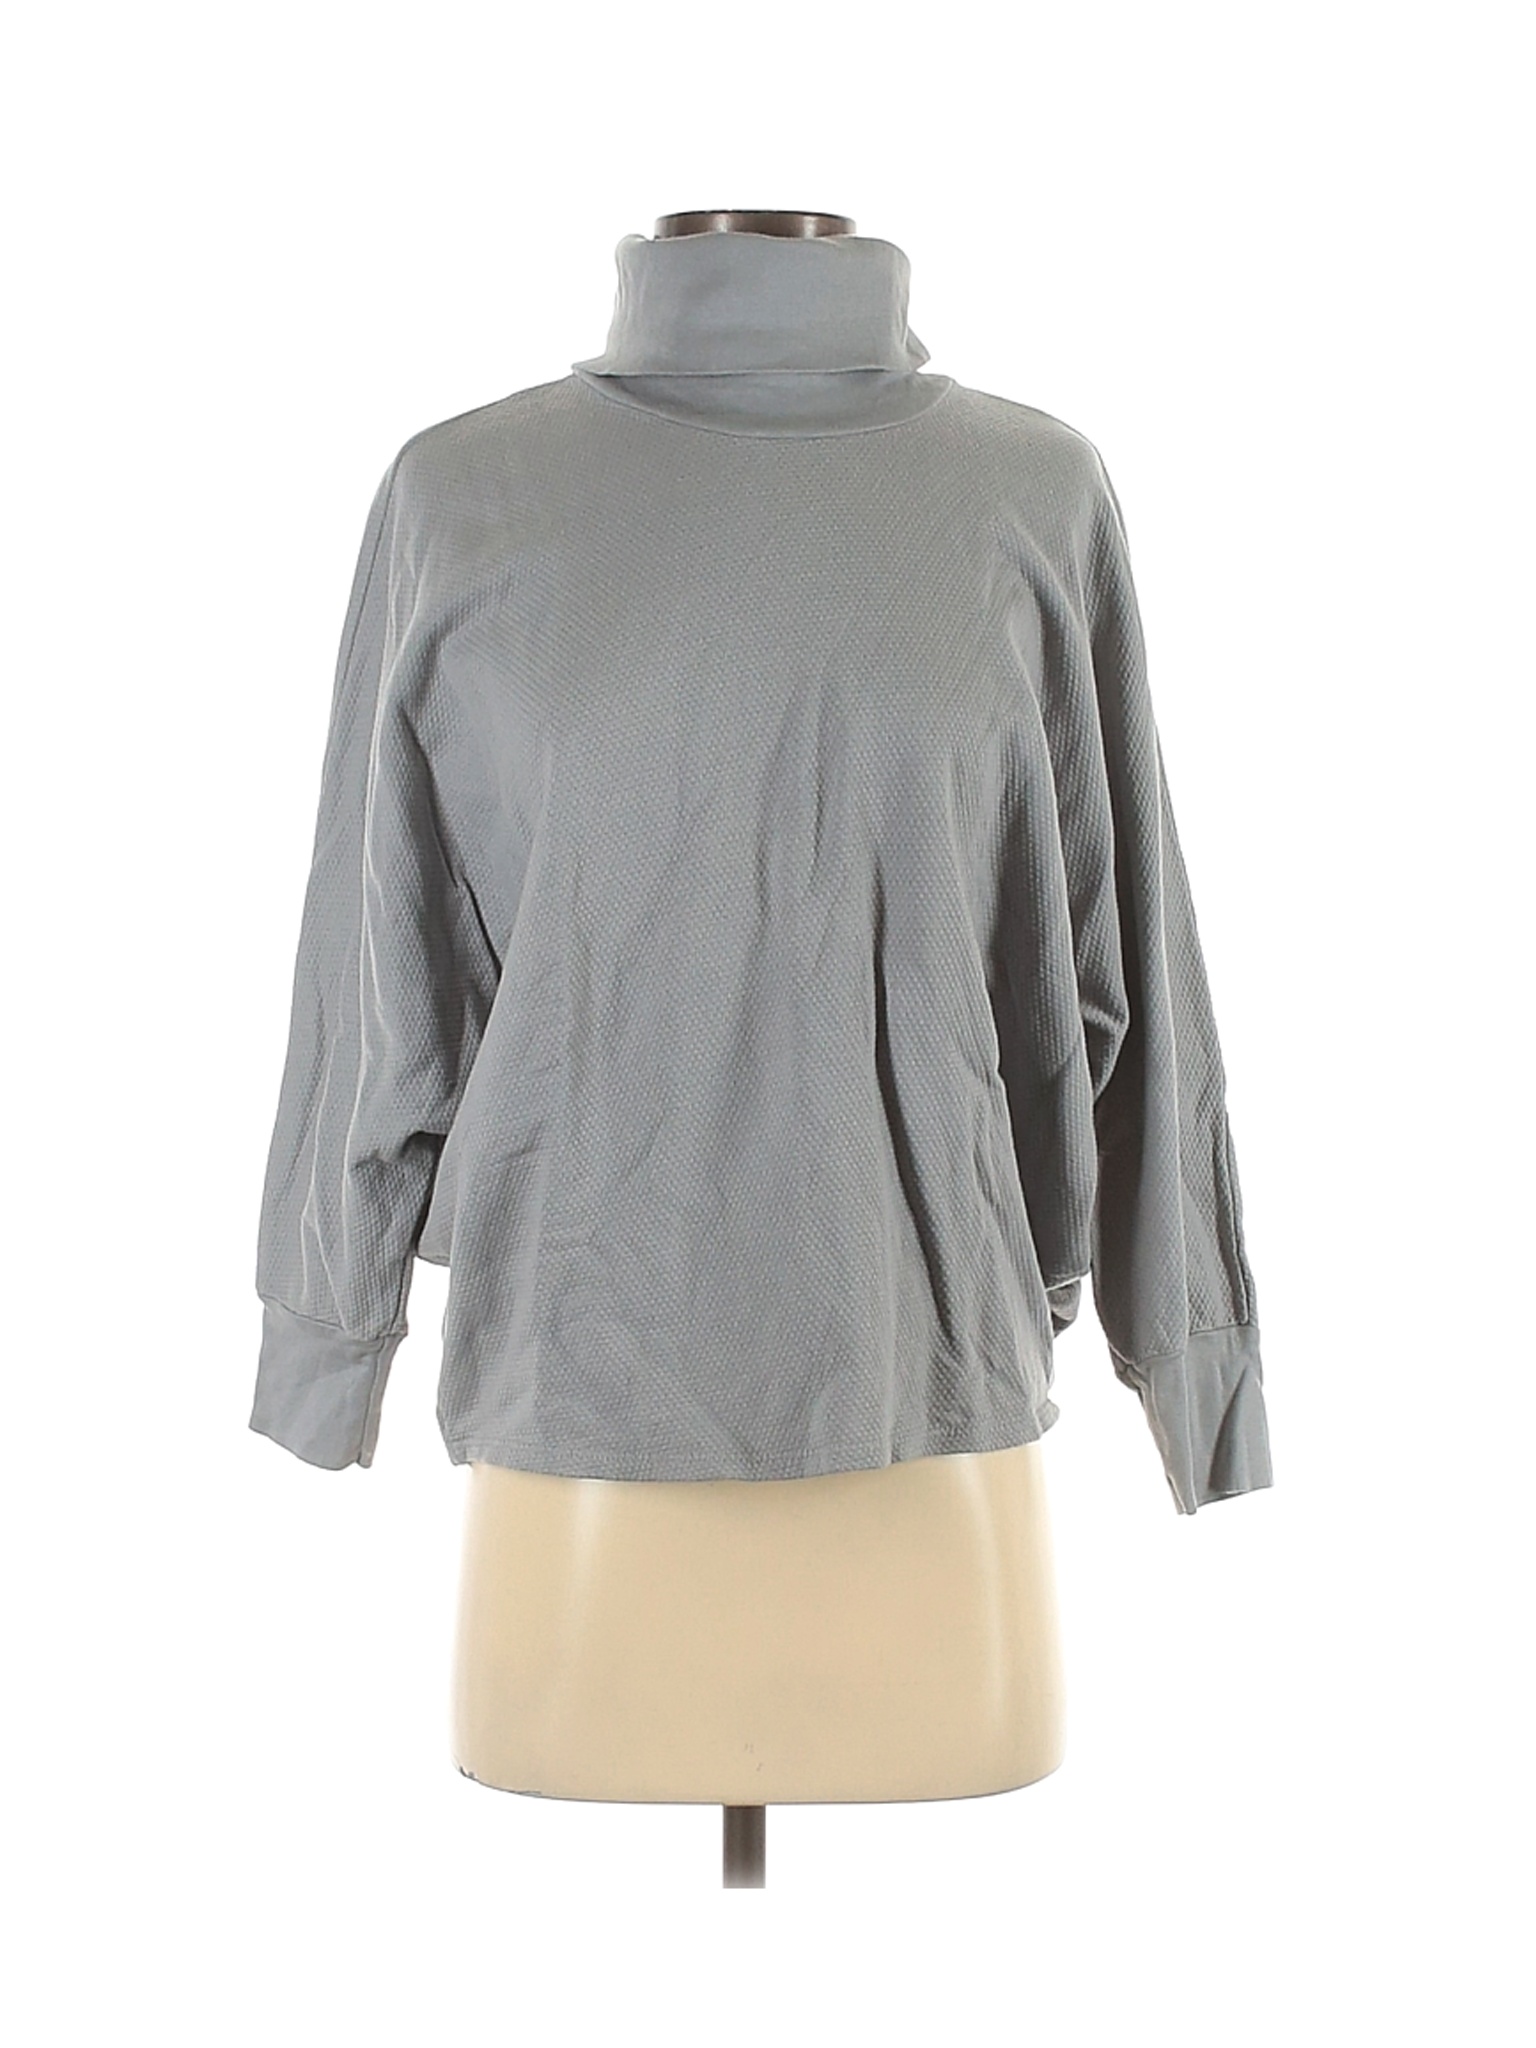 NWT Stateside Women Gray Sweatshirt S | eBay